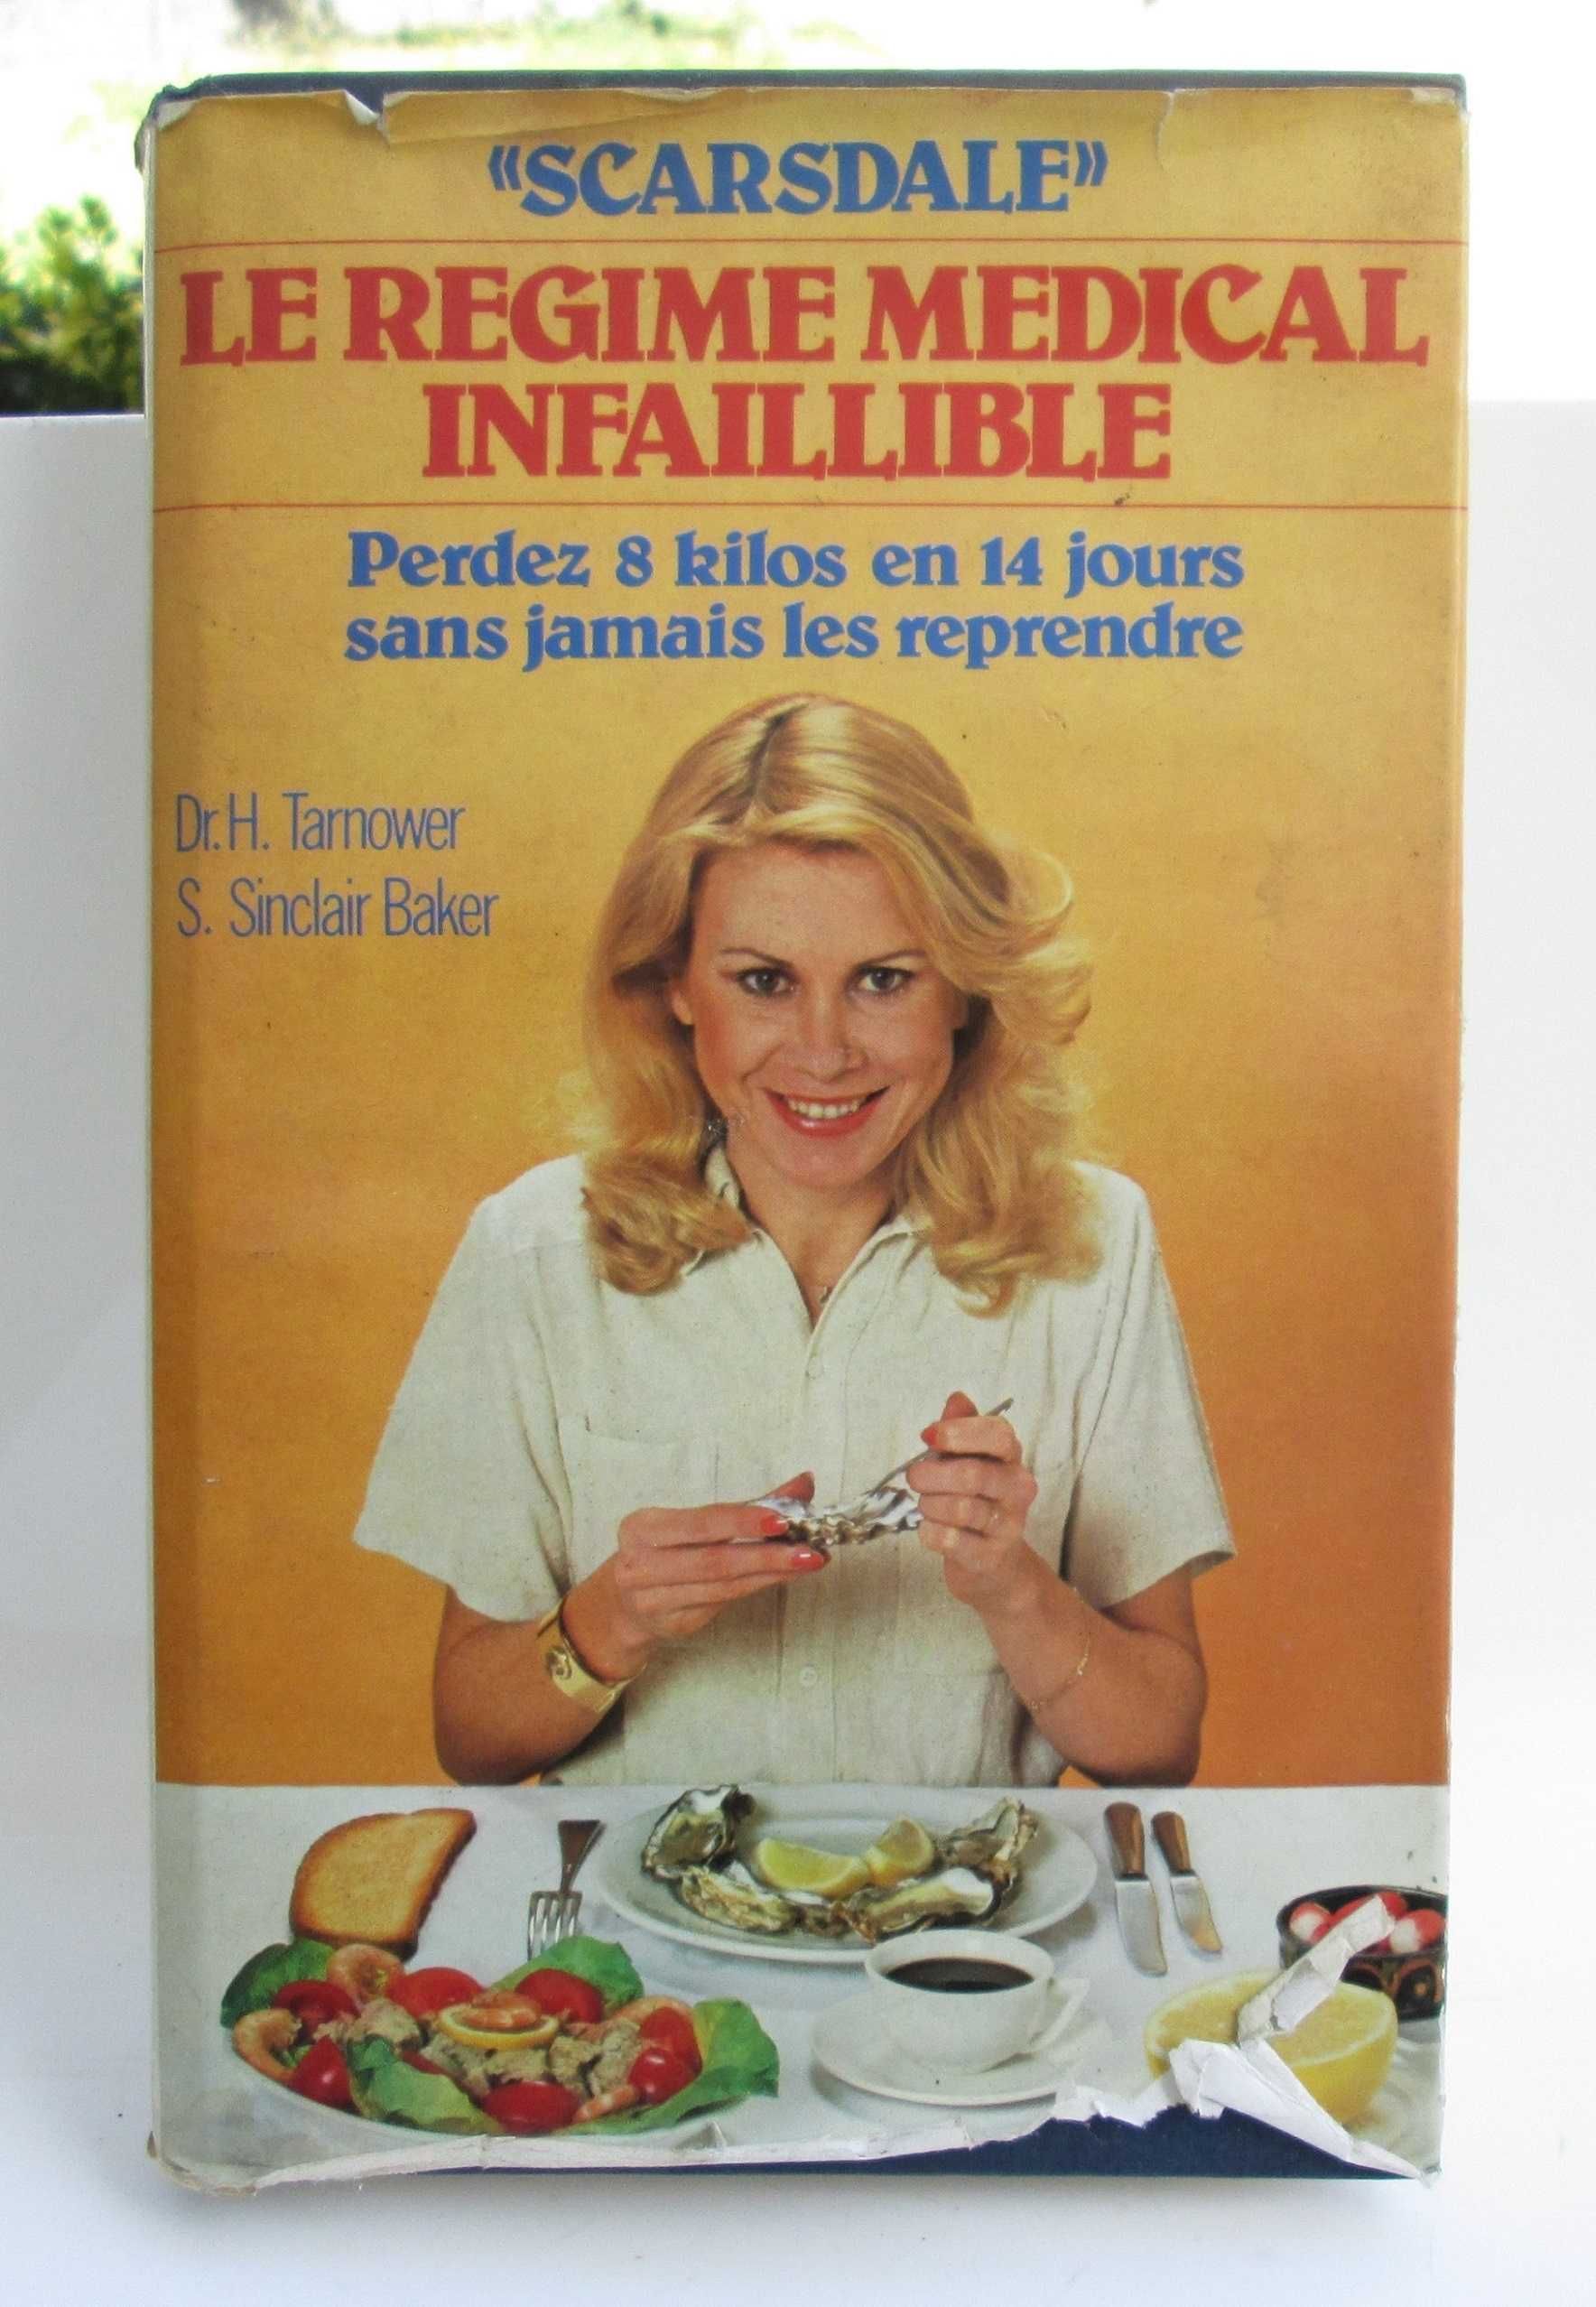 Livro “Scardale” Le régime médical infaillible 1981